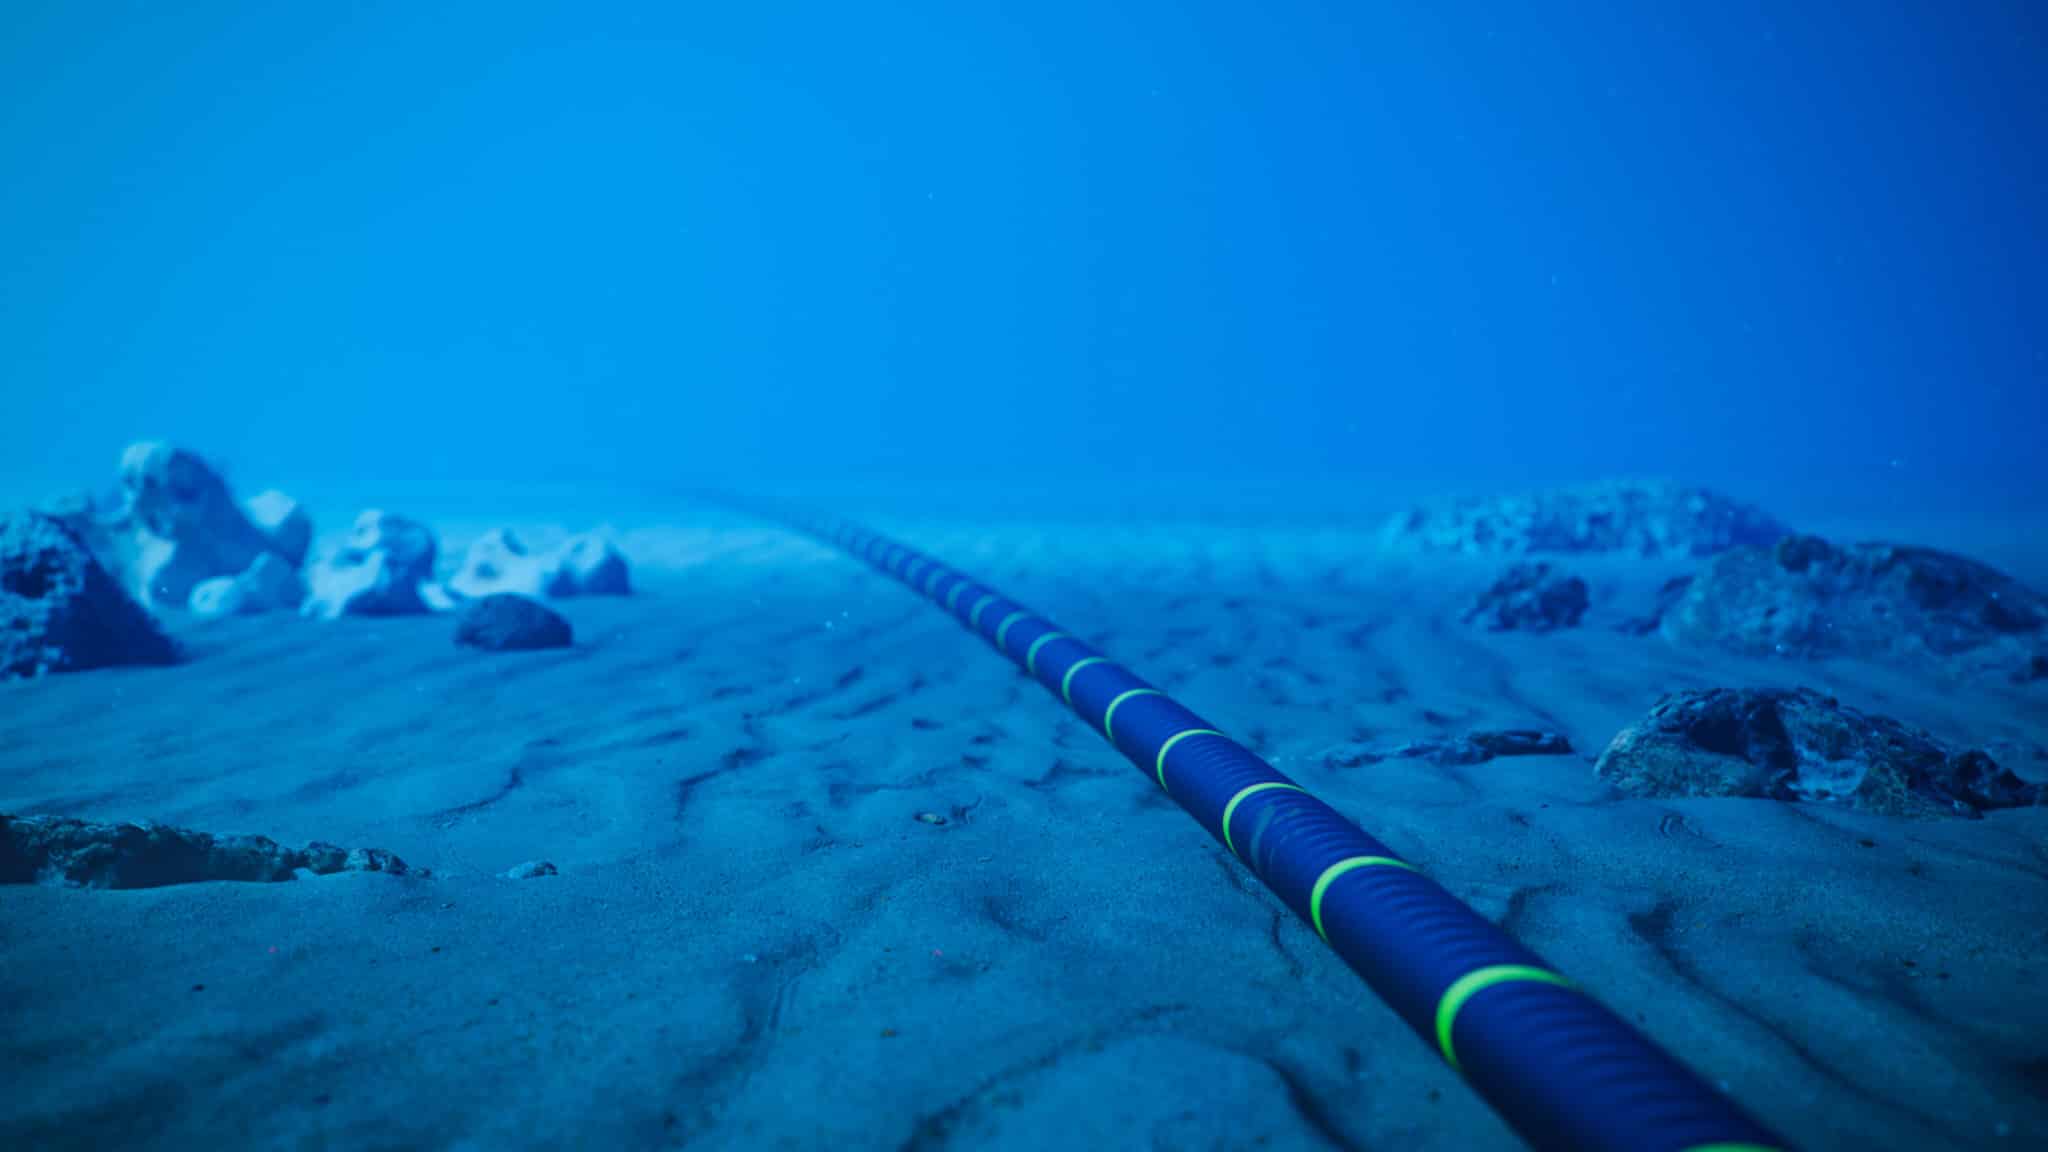 Underwater fiber-optic cables